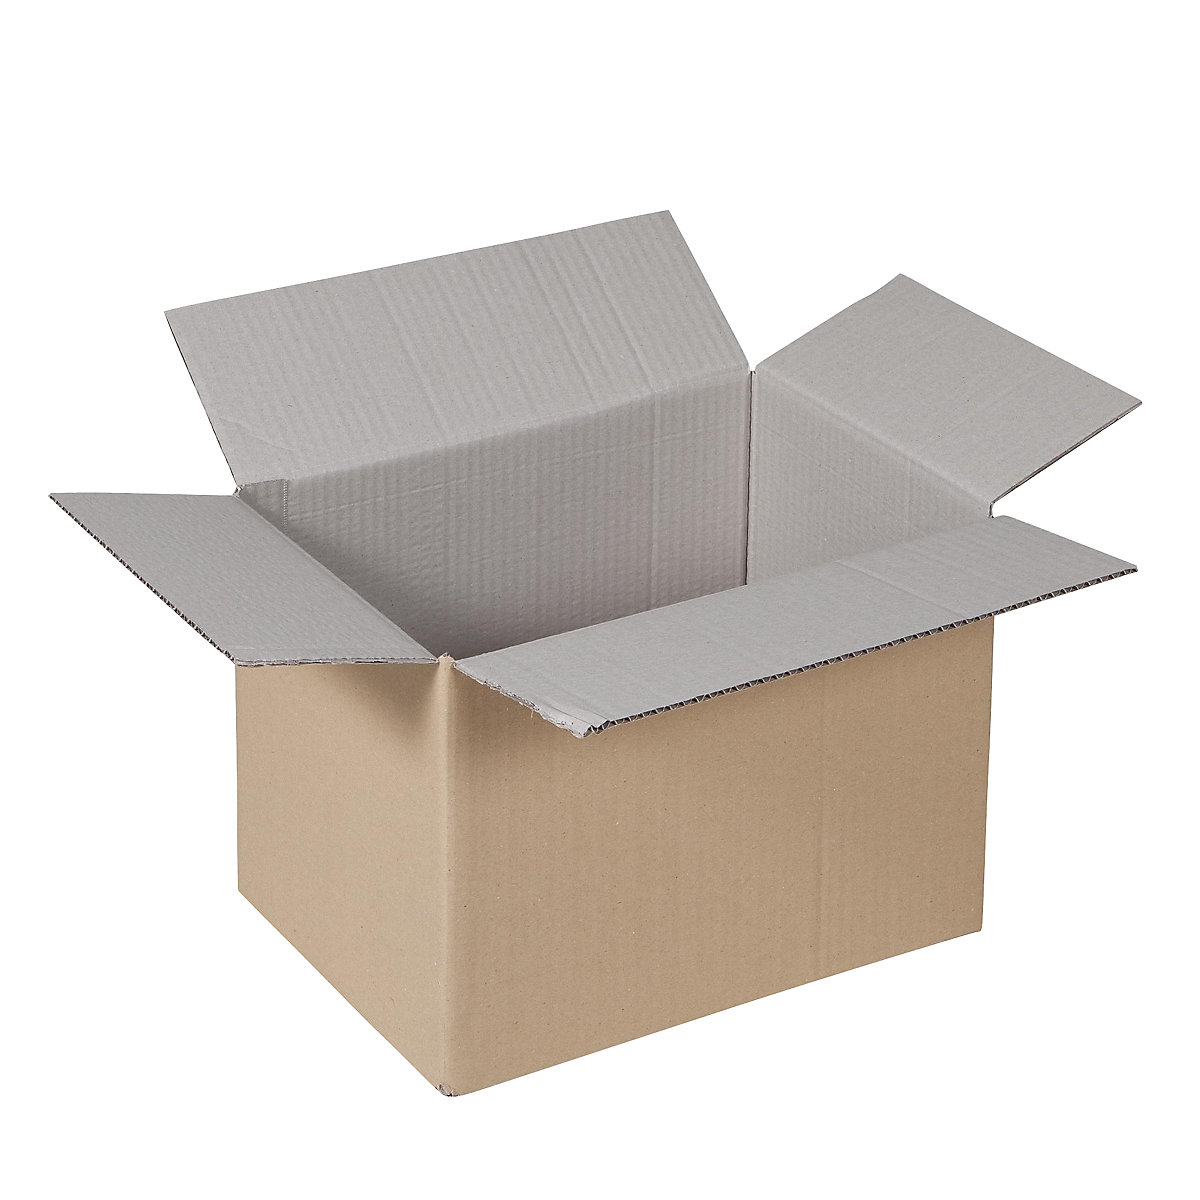 Sklopiva kartonska kutija, FEFCO 0201, od 1-valnog kartona, unutarnje dimenzije 320 x 250 x 200 mm, pak. 50 kom.-23